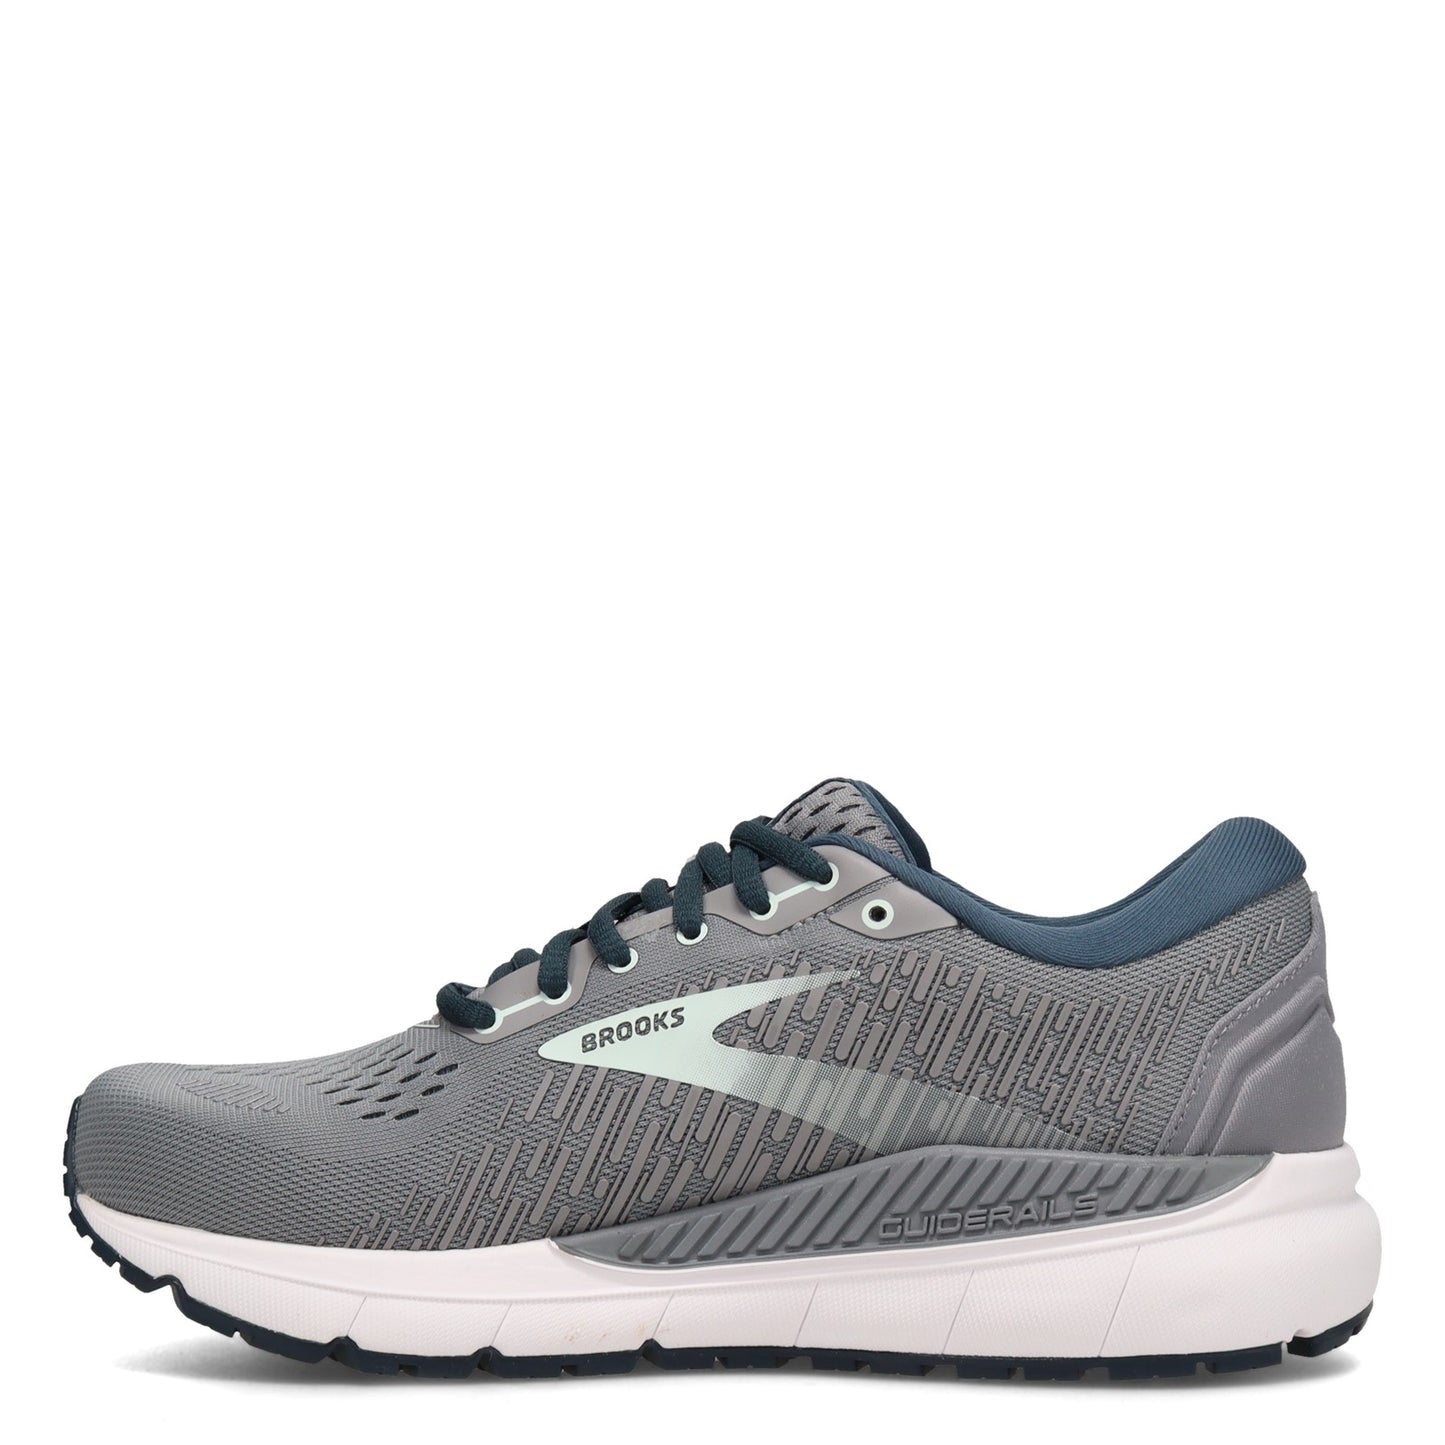 Peltz Shoes  Women's Brooks Addiction GTS 15 Running Shoe - Wide Width Grey/Navy 120352 1D 099